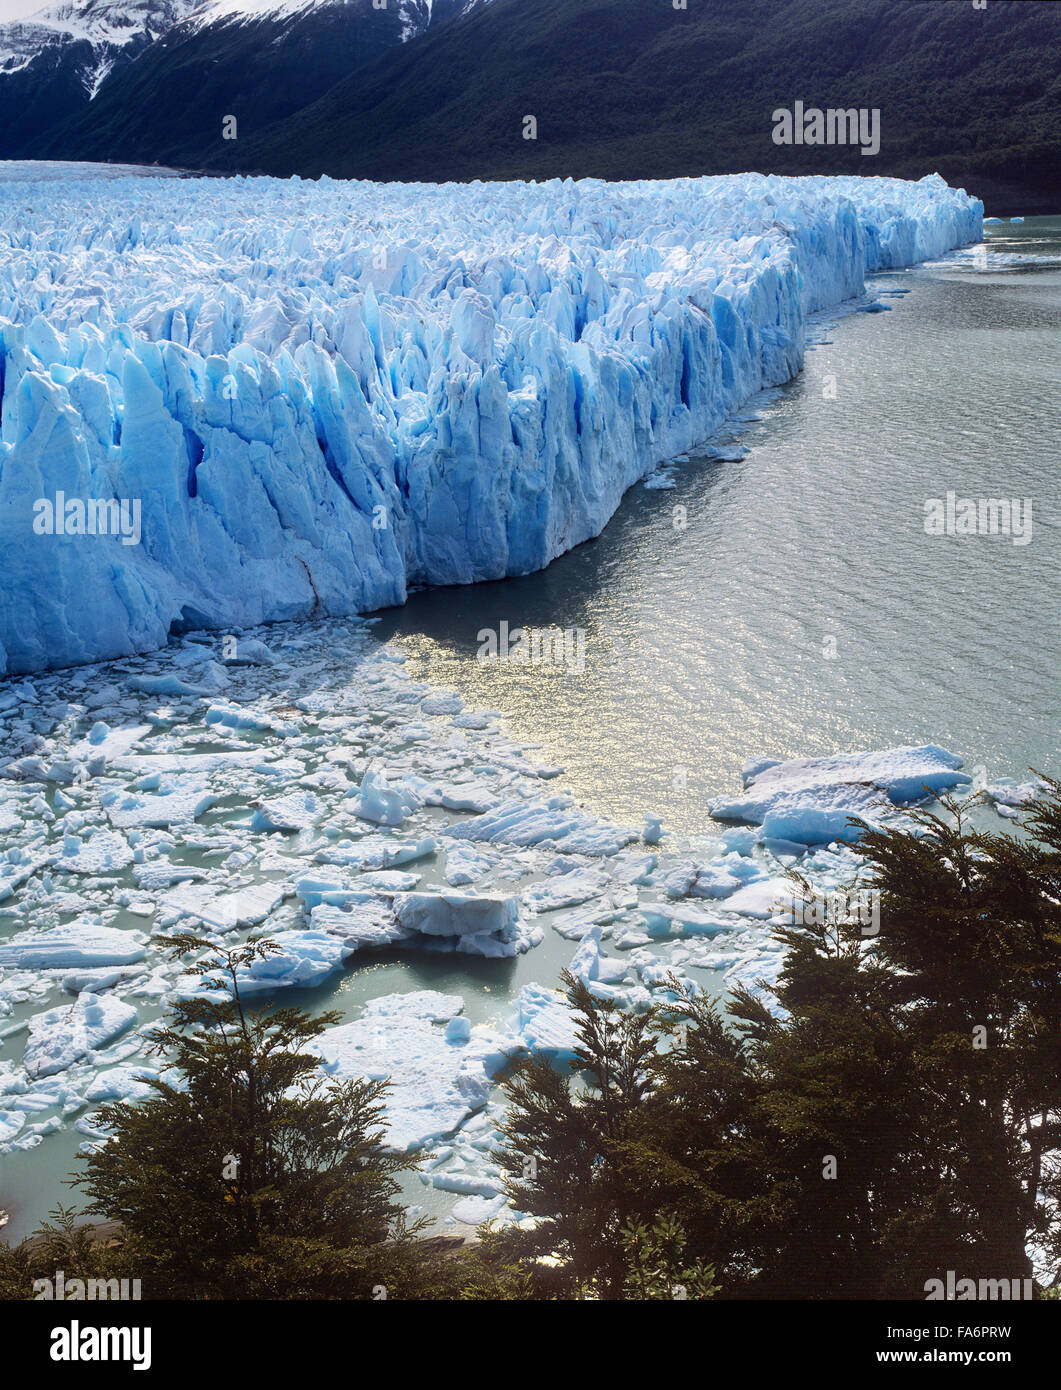 Argentina, Patagonia, Santa Cruz Province, Parque Nacional Los Glaciares, Lago Argentino, Perito Moreno Glacier Stock Photo